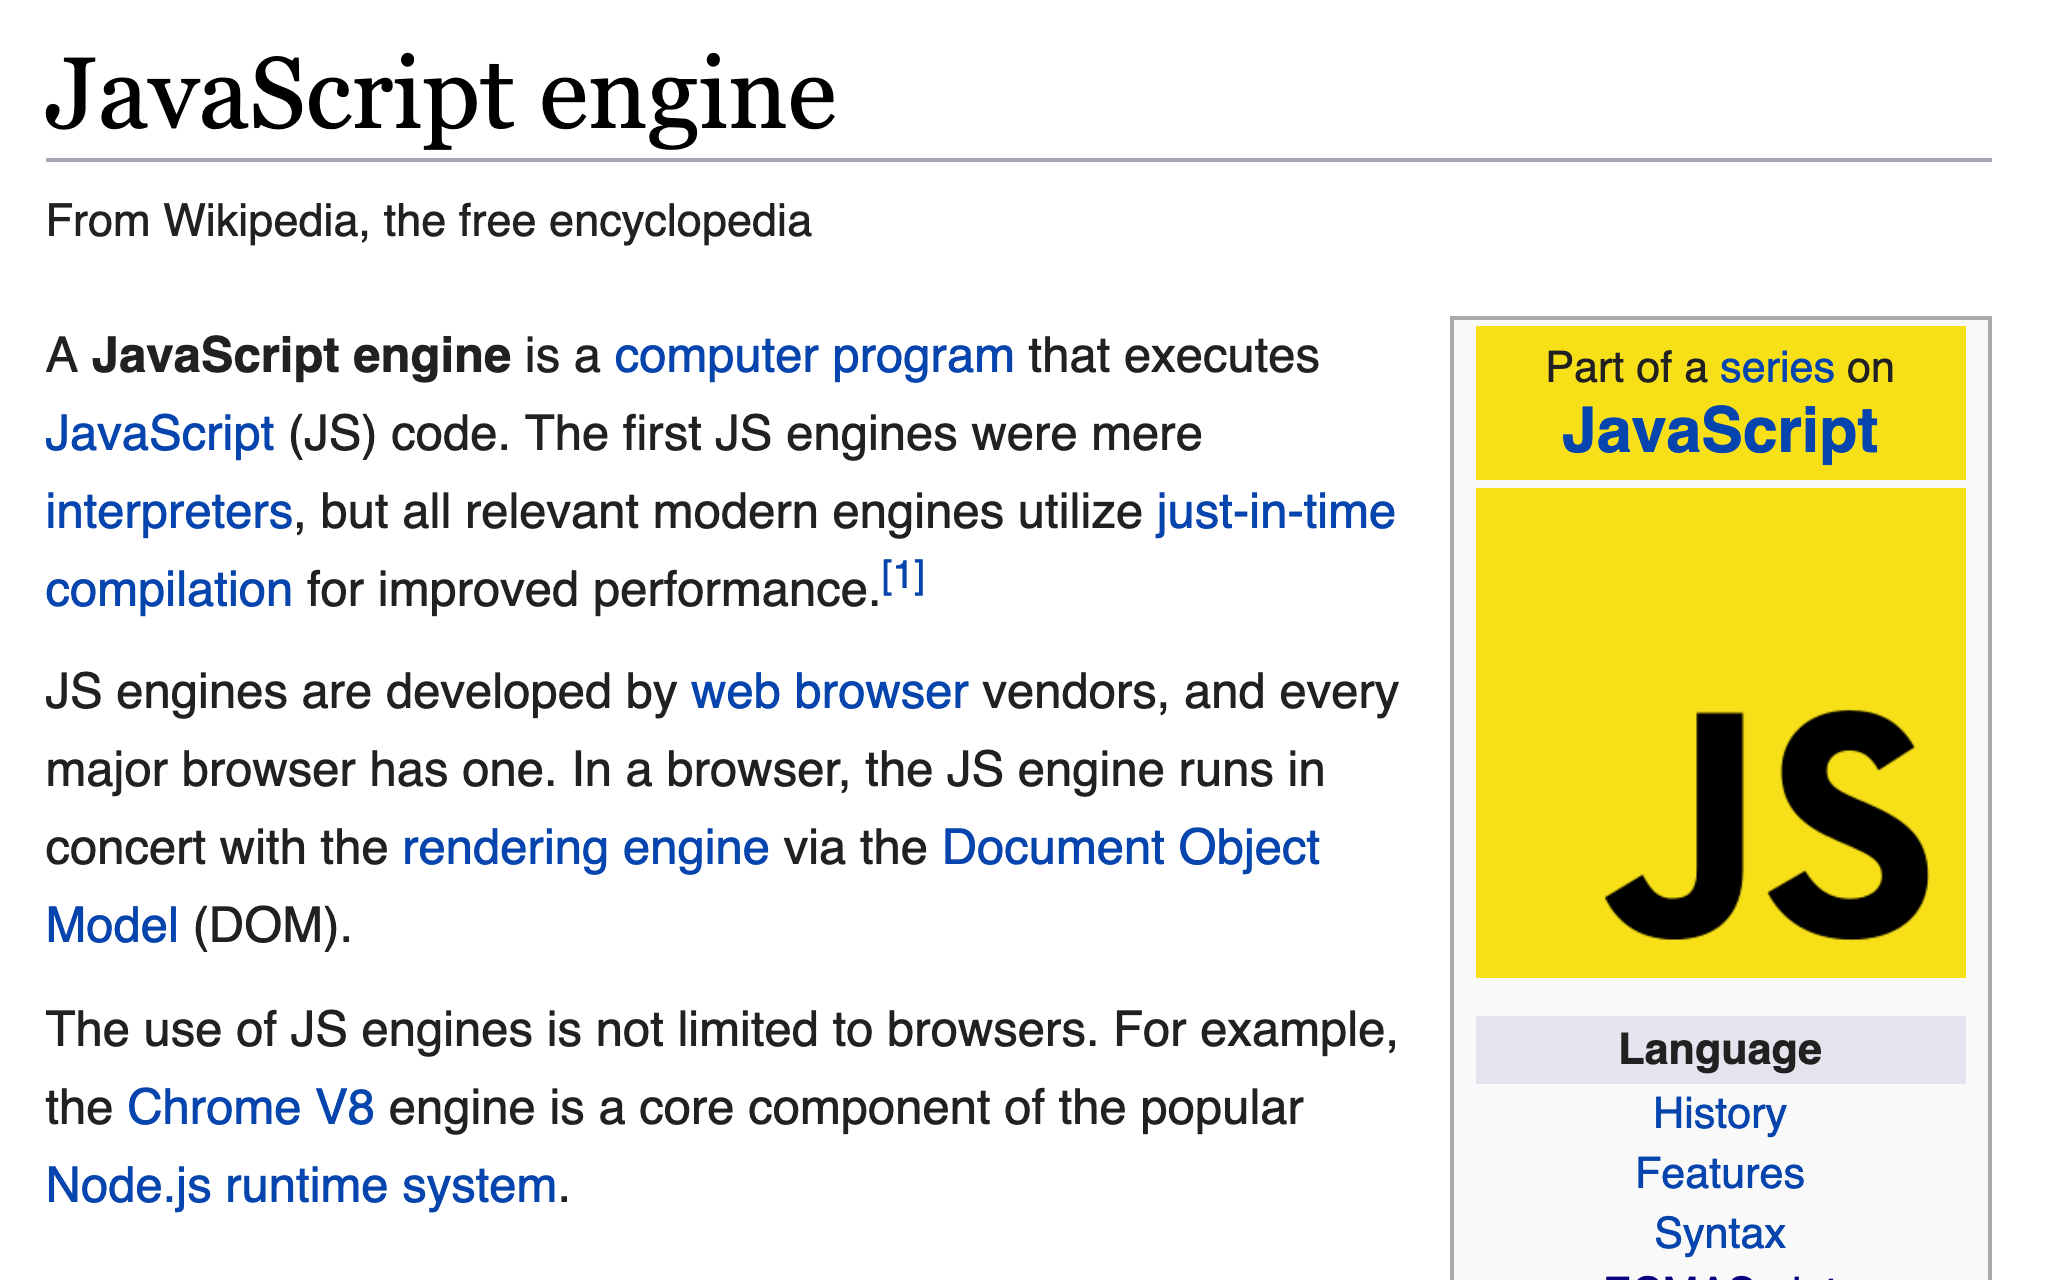 JavaScript Engines